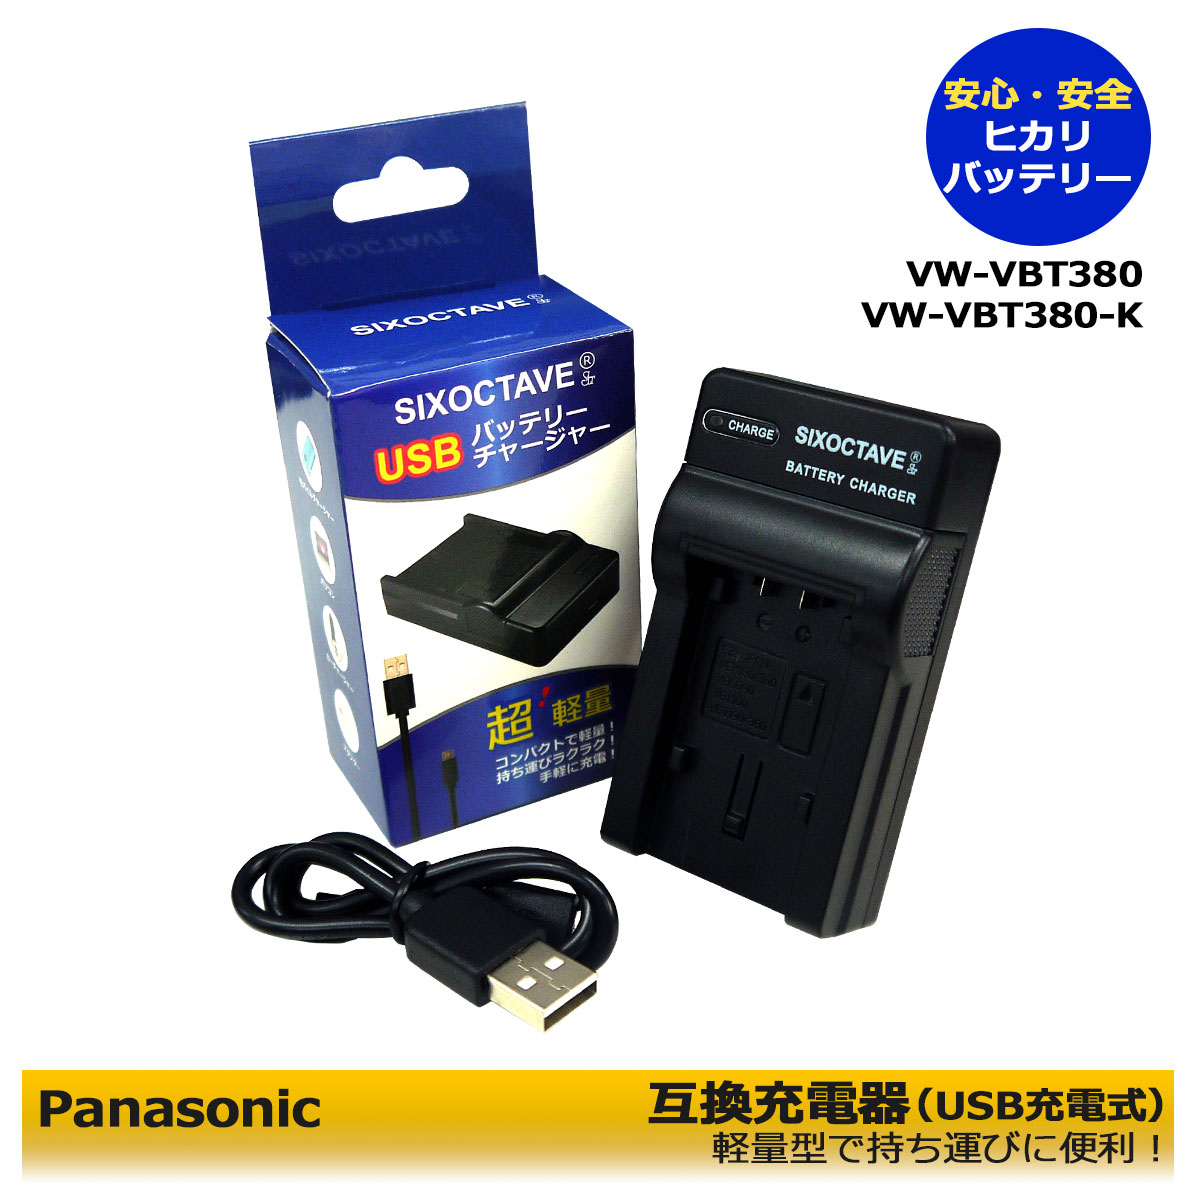 送料無料【あす楽対応】Panasonic パナソニック VW-VBT380-K / VW-VBT380 互換USB充電器 1点 （純正＆互換バッテリーも充電可能。）HC-V210M / HC-V230M / HC-V330M / HC-V360M / HC-V360MS / HC-V480M / HC-V480MS / HC-V520M / HC-V550M / HC-V620M / HC-V495M